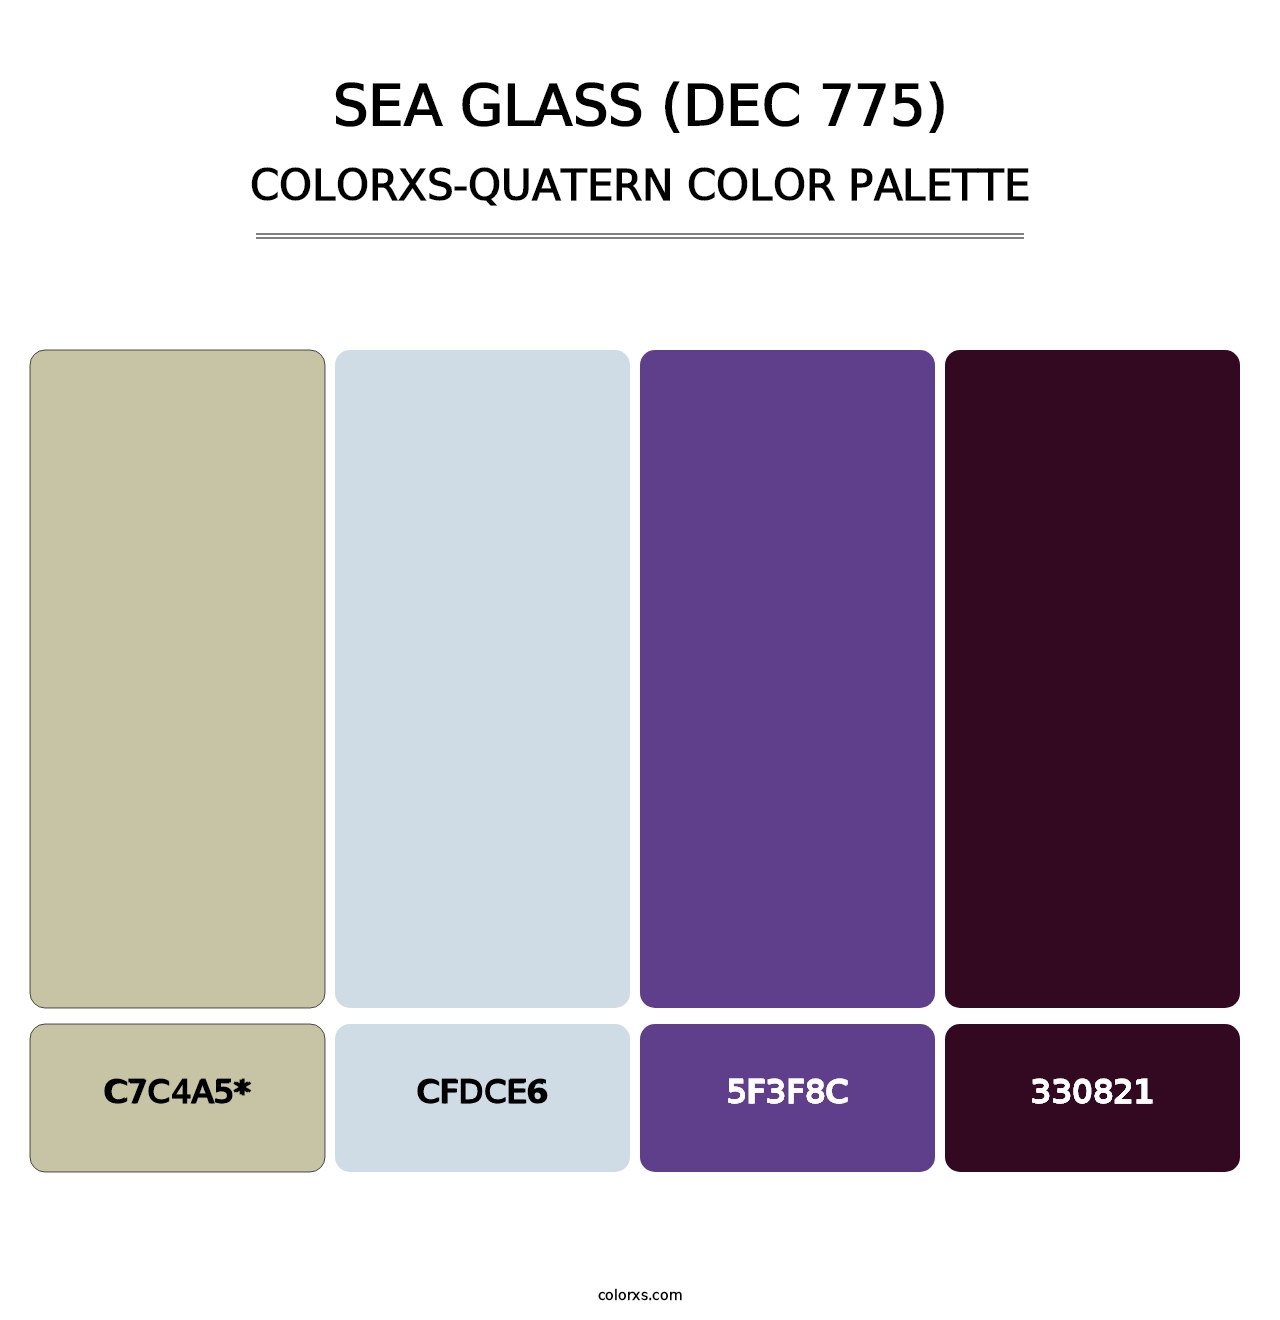 Sea Glass (DEC 775) - Colorxs Quad Palette